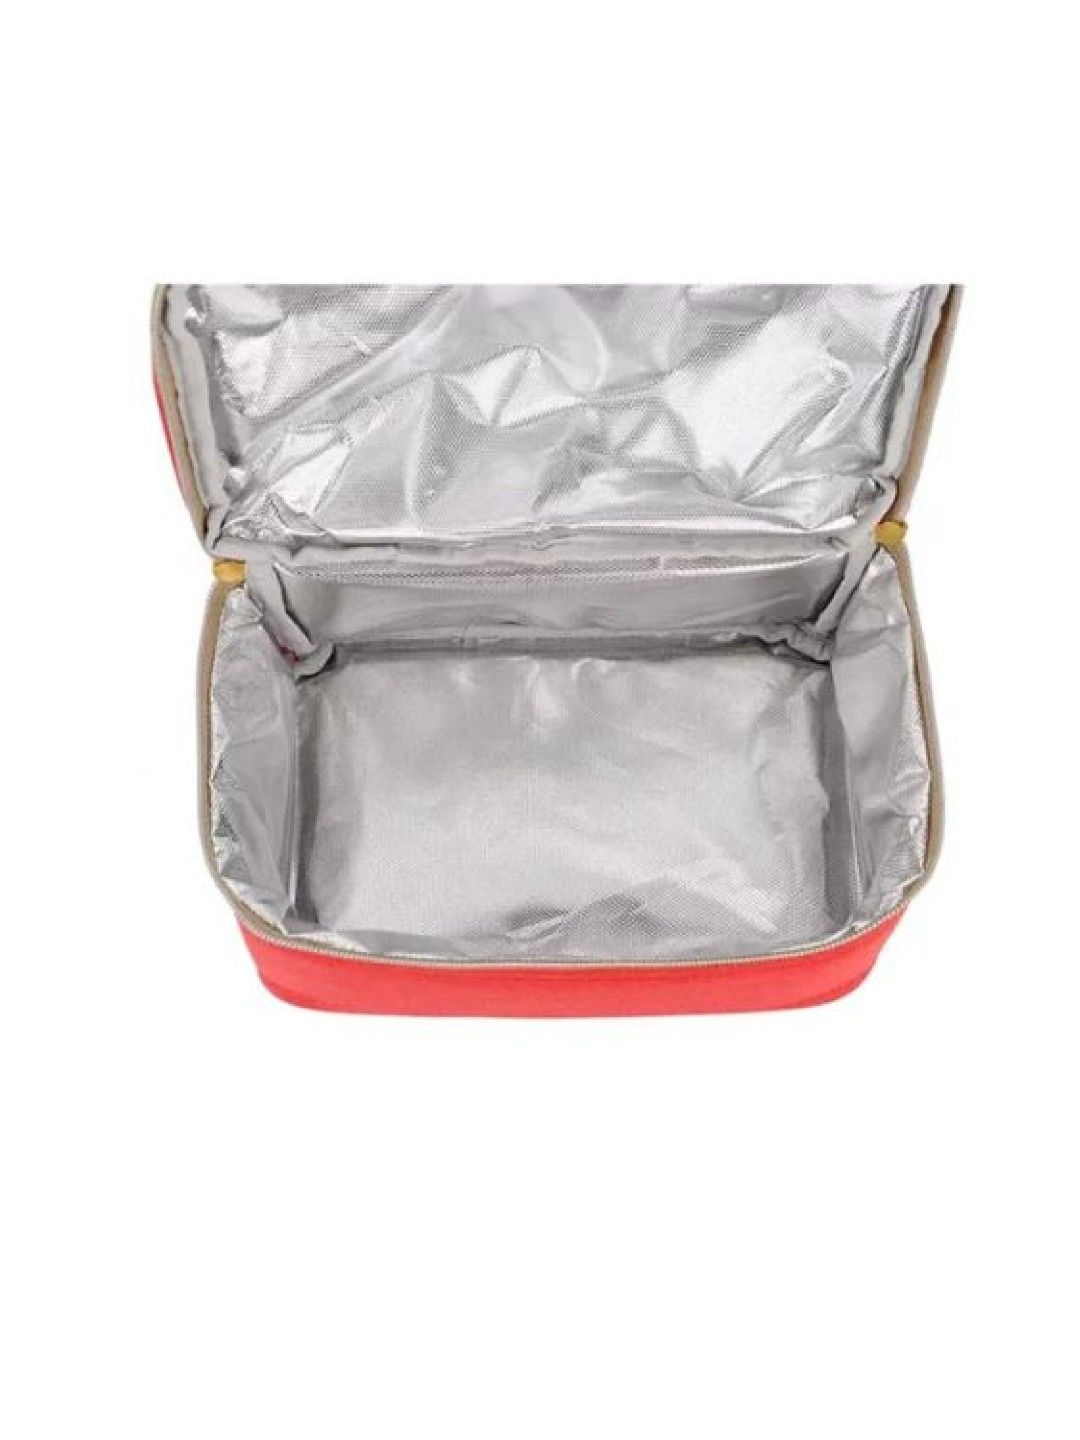 V-coool Thermal Cooler Breastmilk Backpack Bag (Light Red- Image 2)